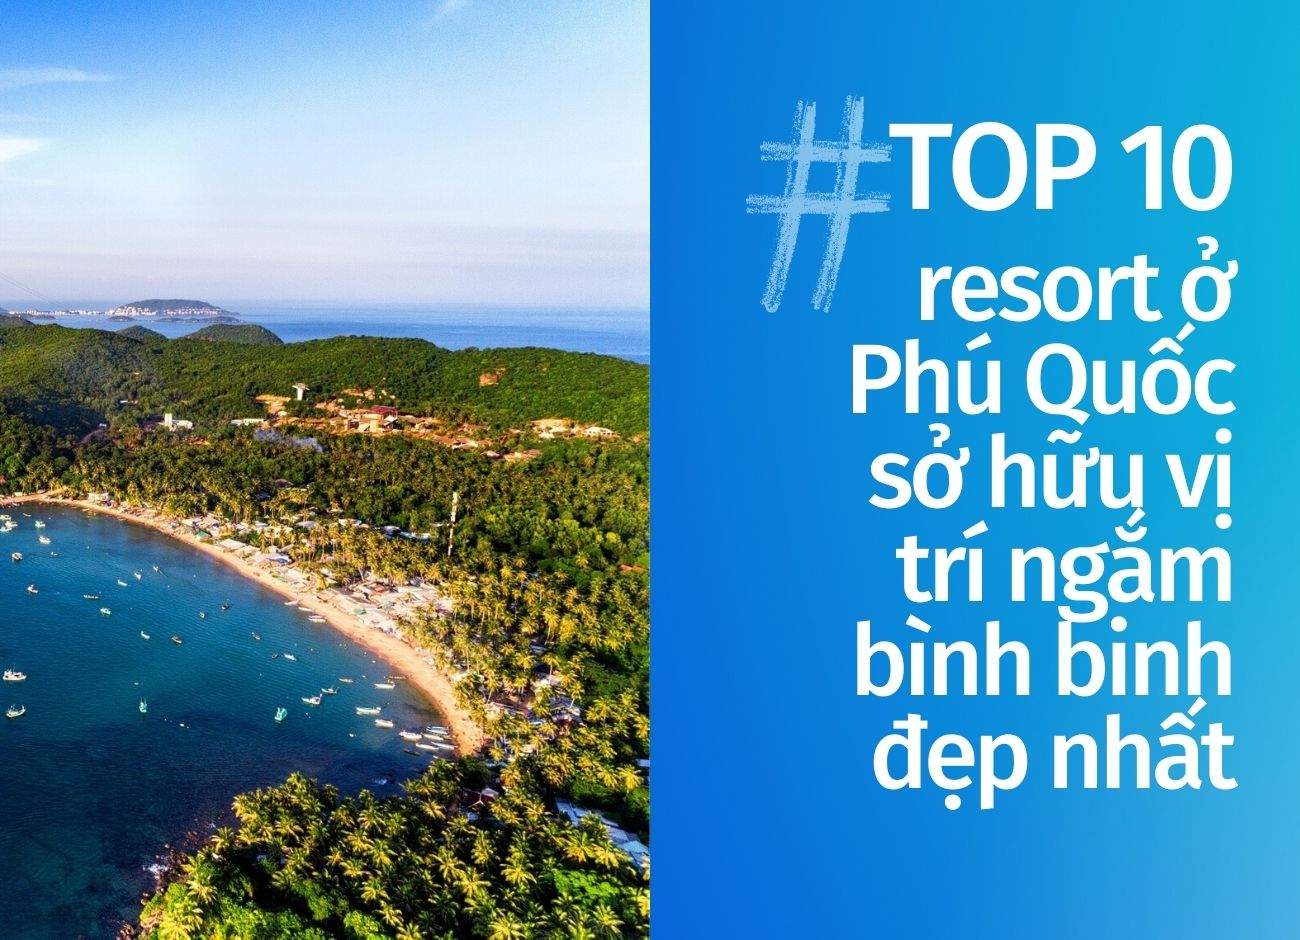 Top 10 resort Phú Quốc sở hữu vị trí ngắm bình binh đẹp nhất cập nhật tháng 05 năm 2022